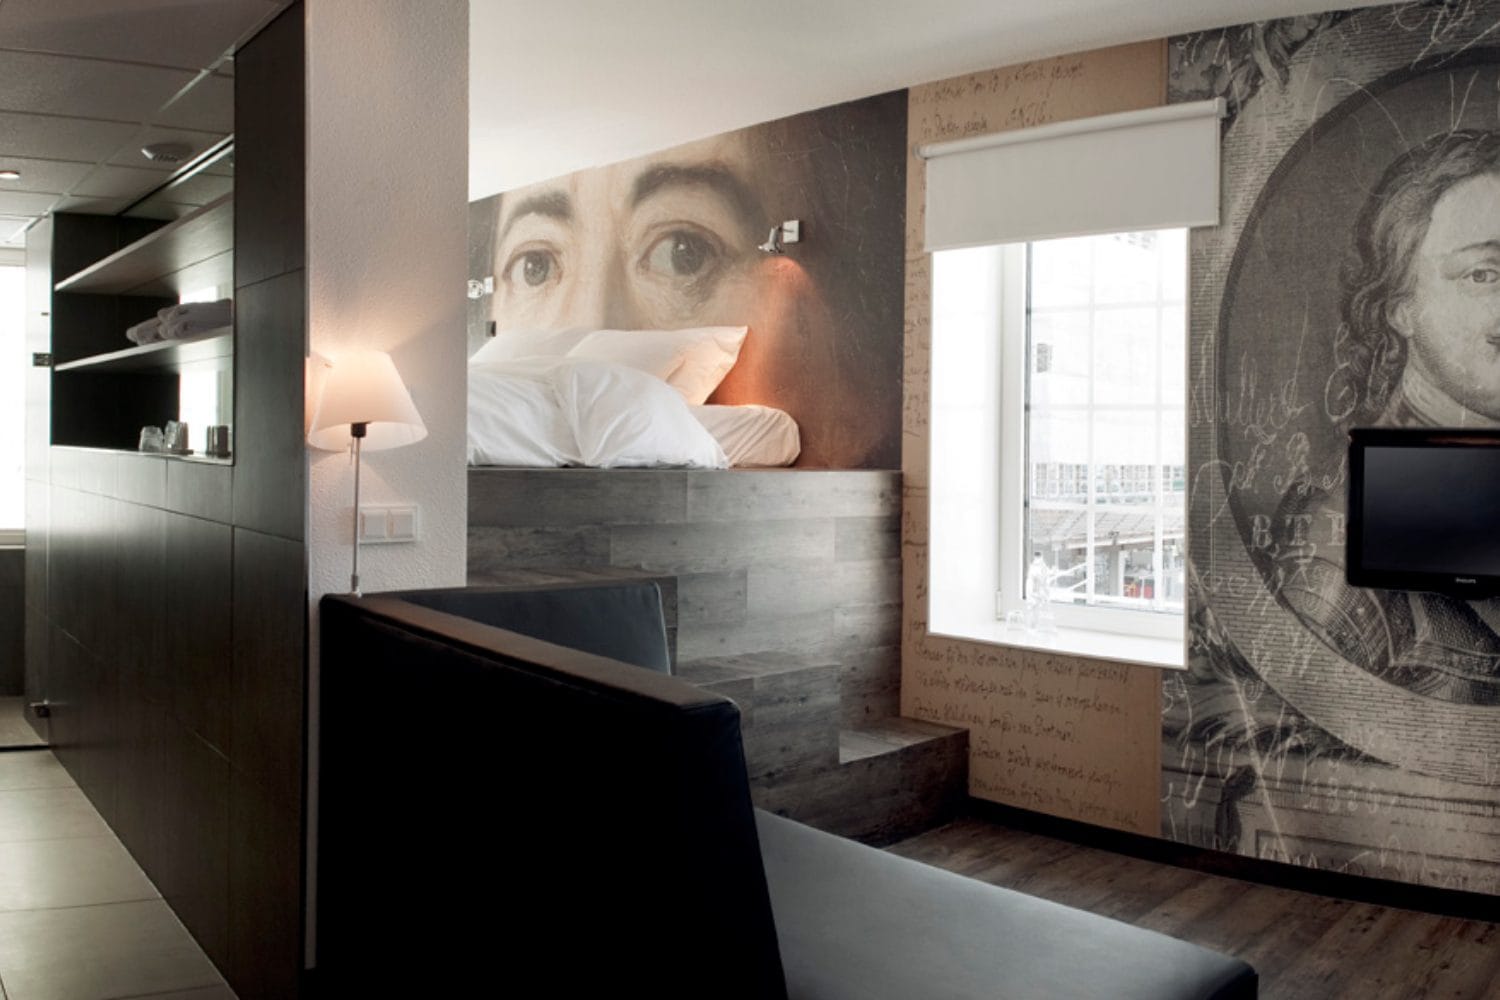 Luxe hotel in Zaanstad - Inntel Hotels Amsterdam Zaandam